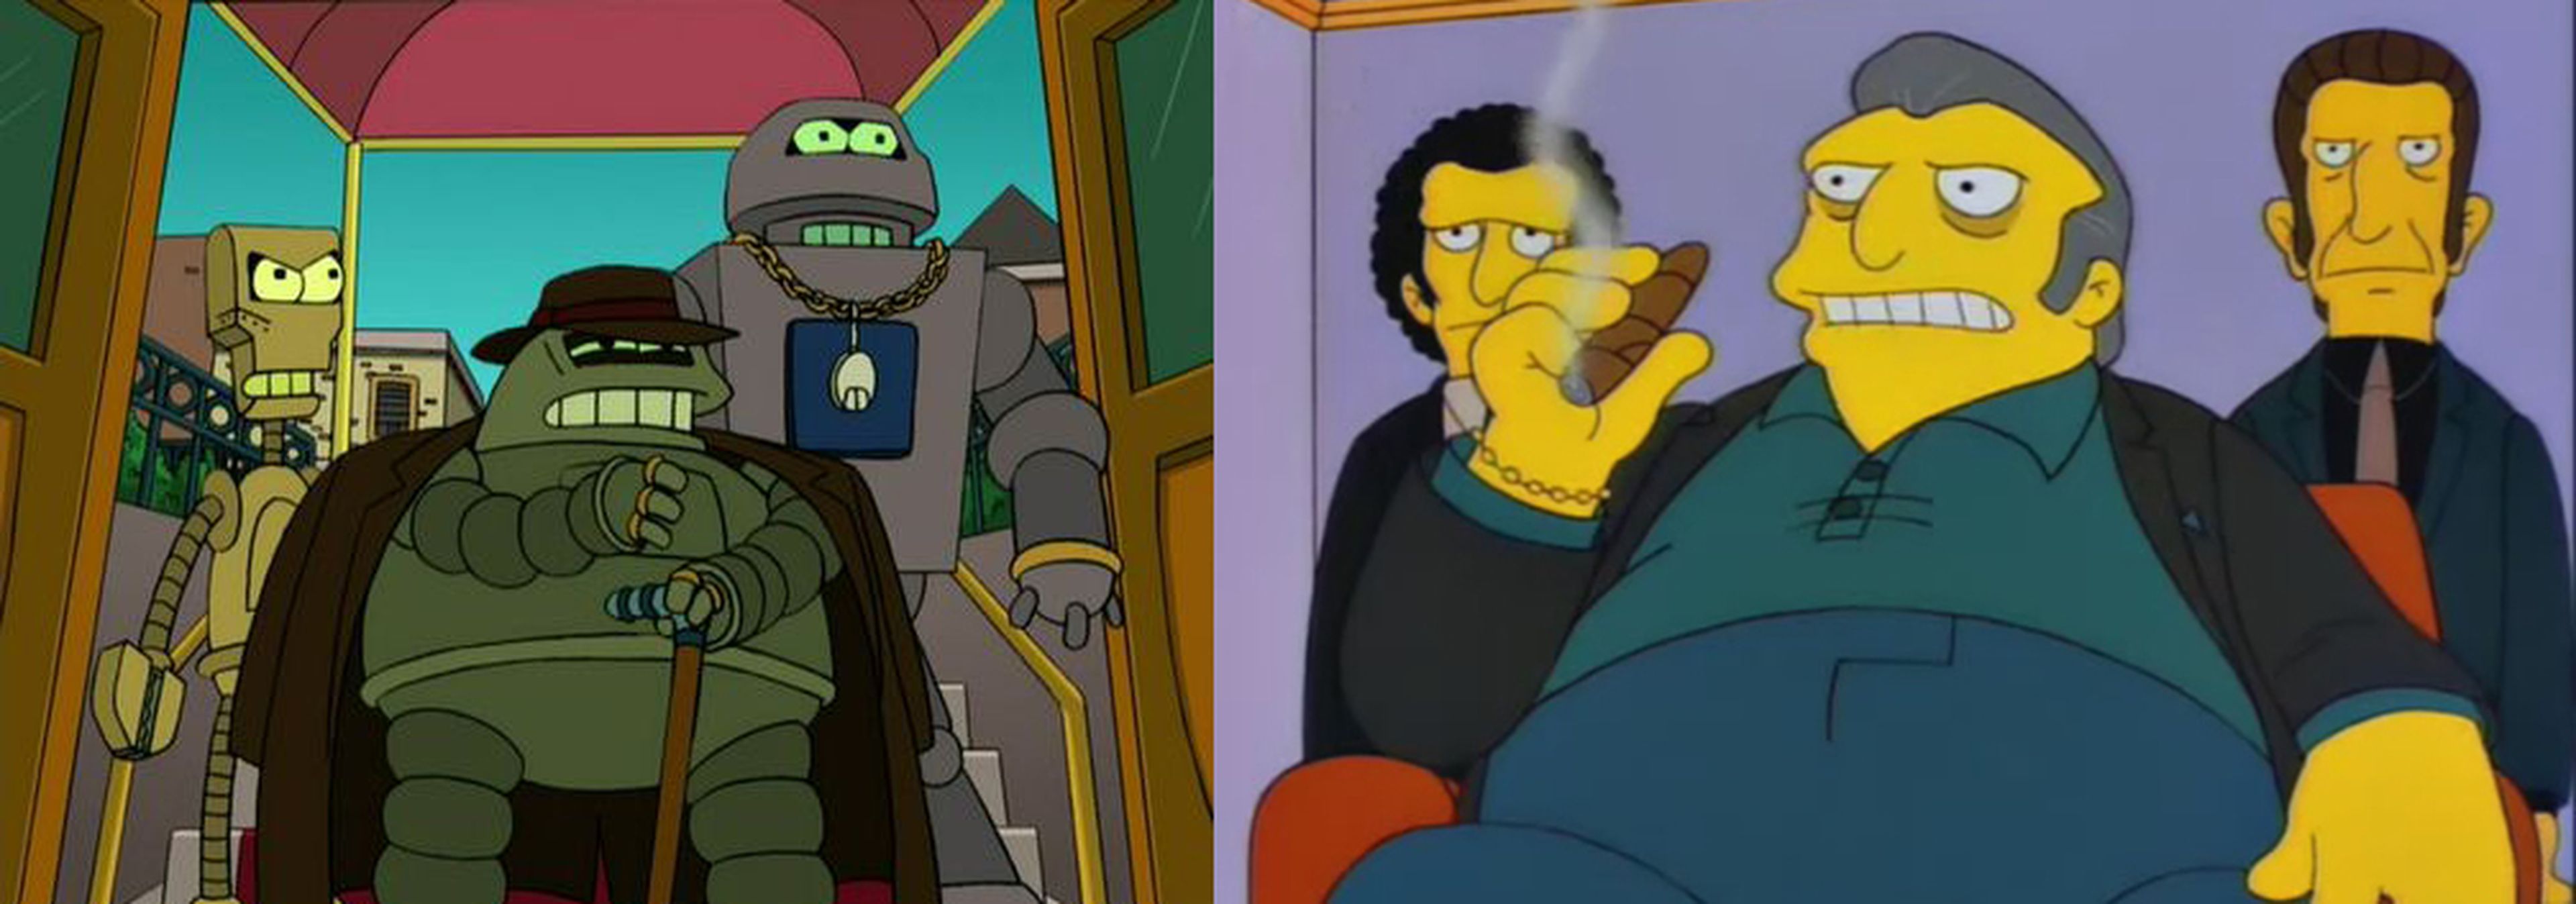 Donbot (Futurama) y Tony el Gordo (Simpson)